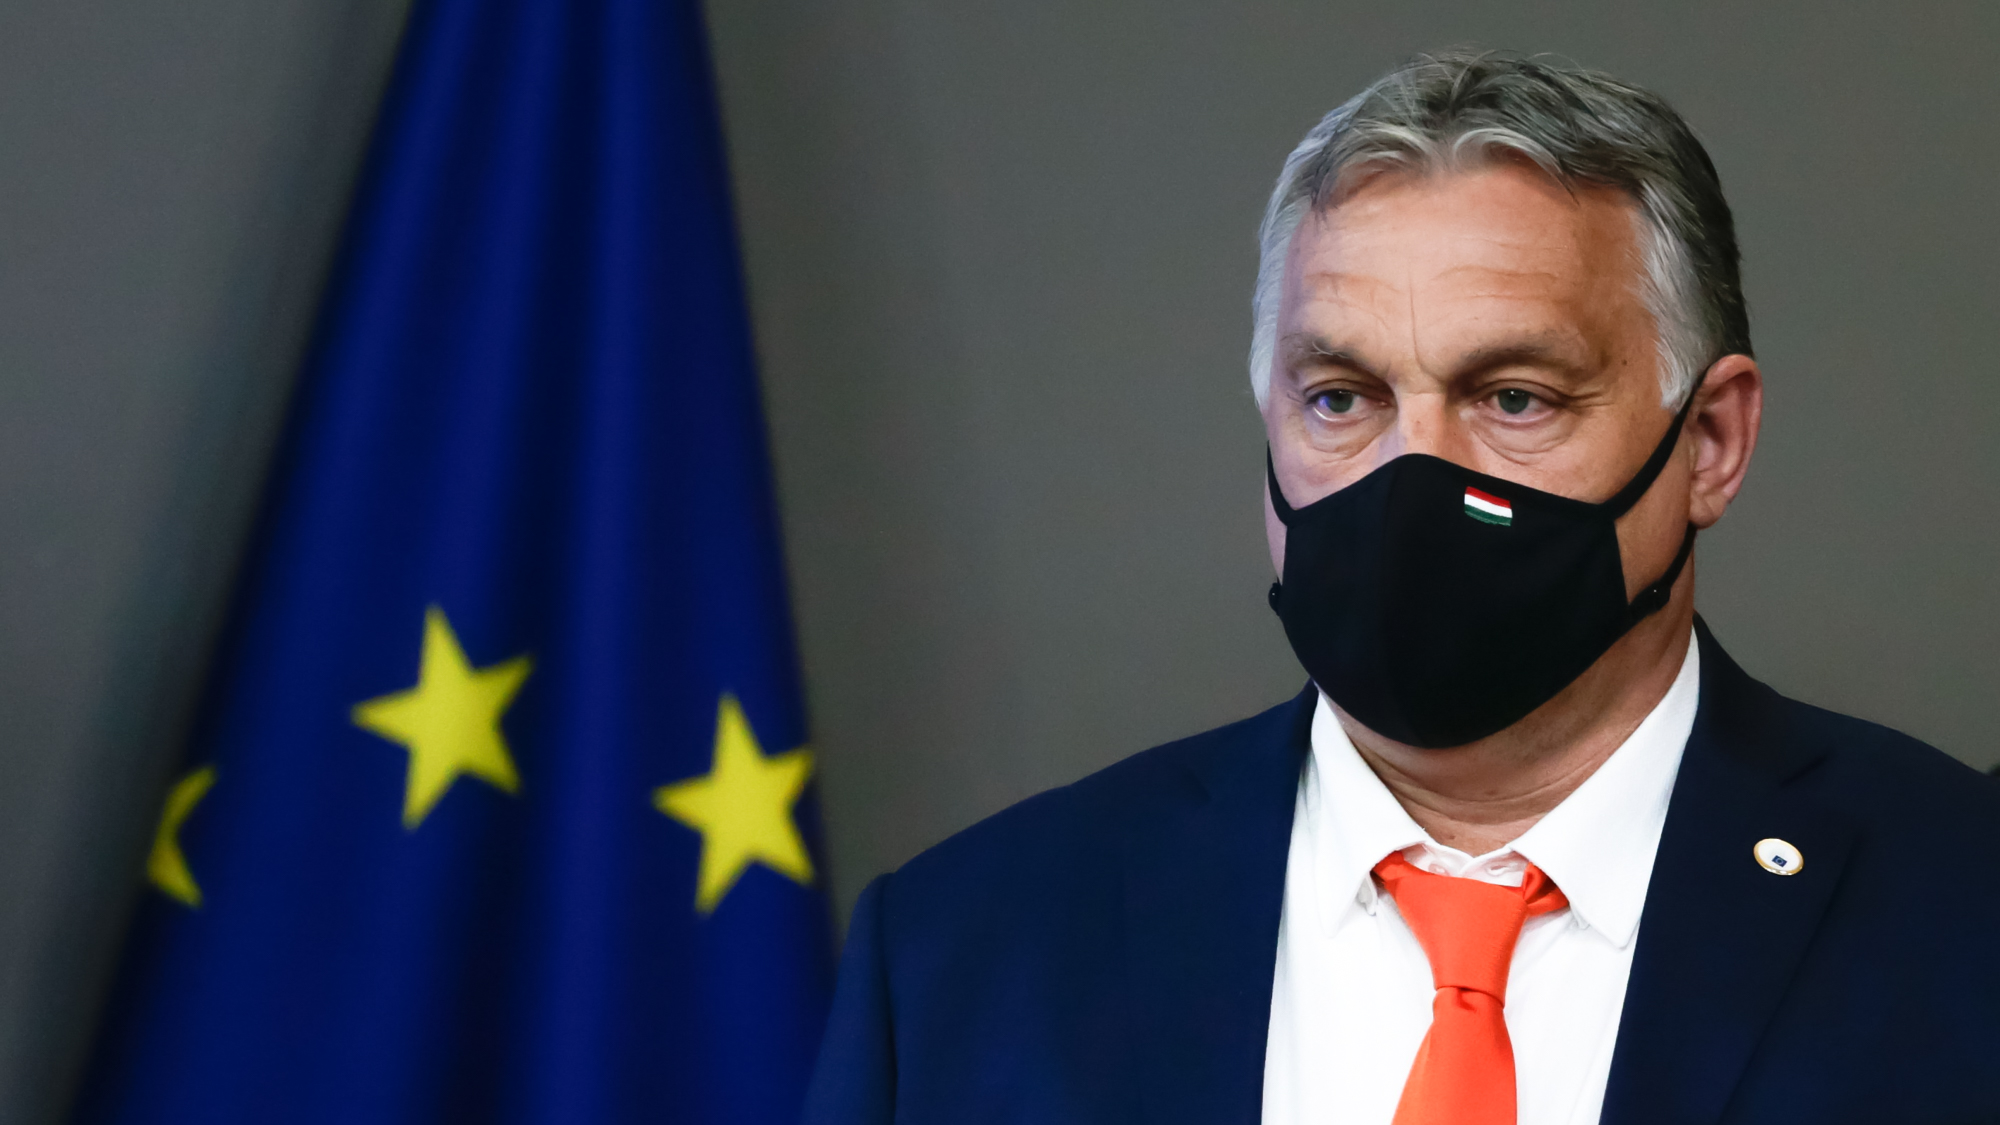 Bekeményített az EU Lengyelországgal szemben, ez Orbán számára is figyelmeztető jel lehet